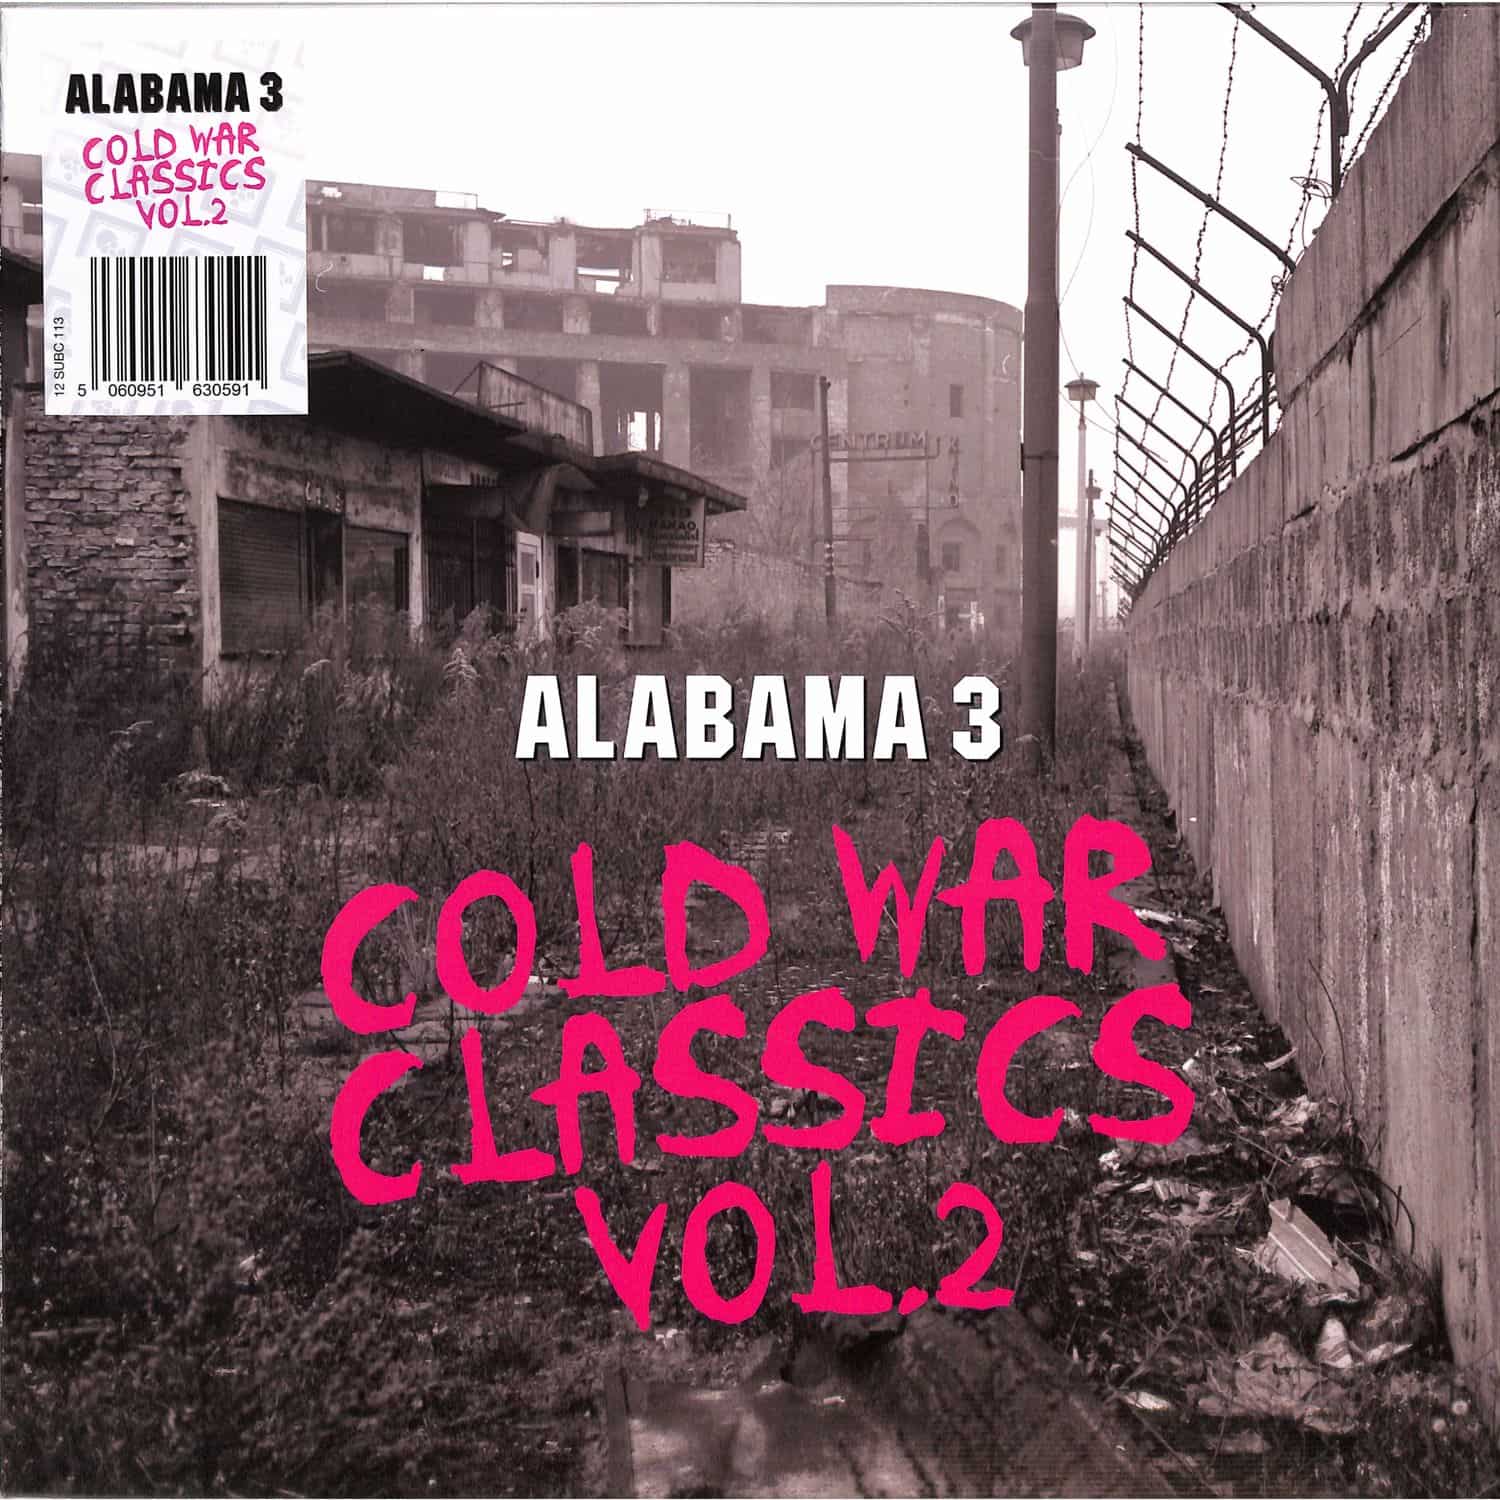 Alabama 3 - COLD WAR CLASSICS VOL. 2 